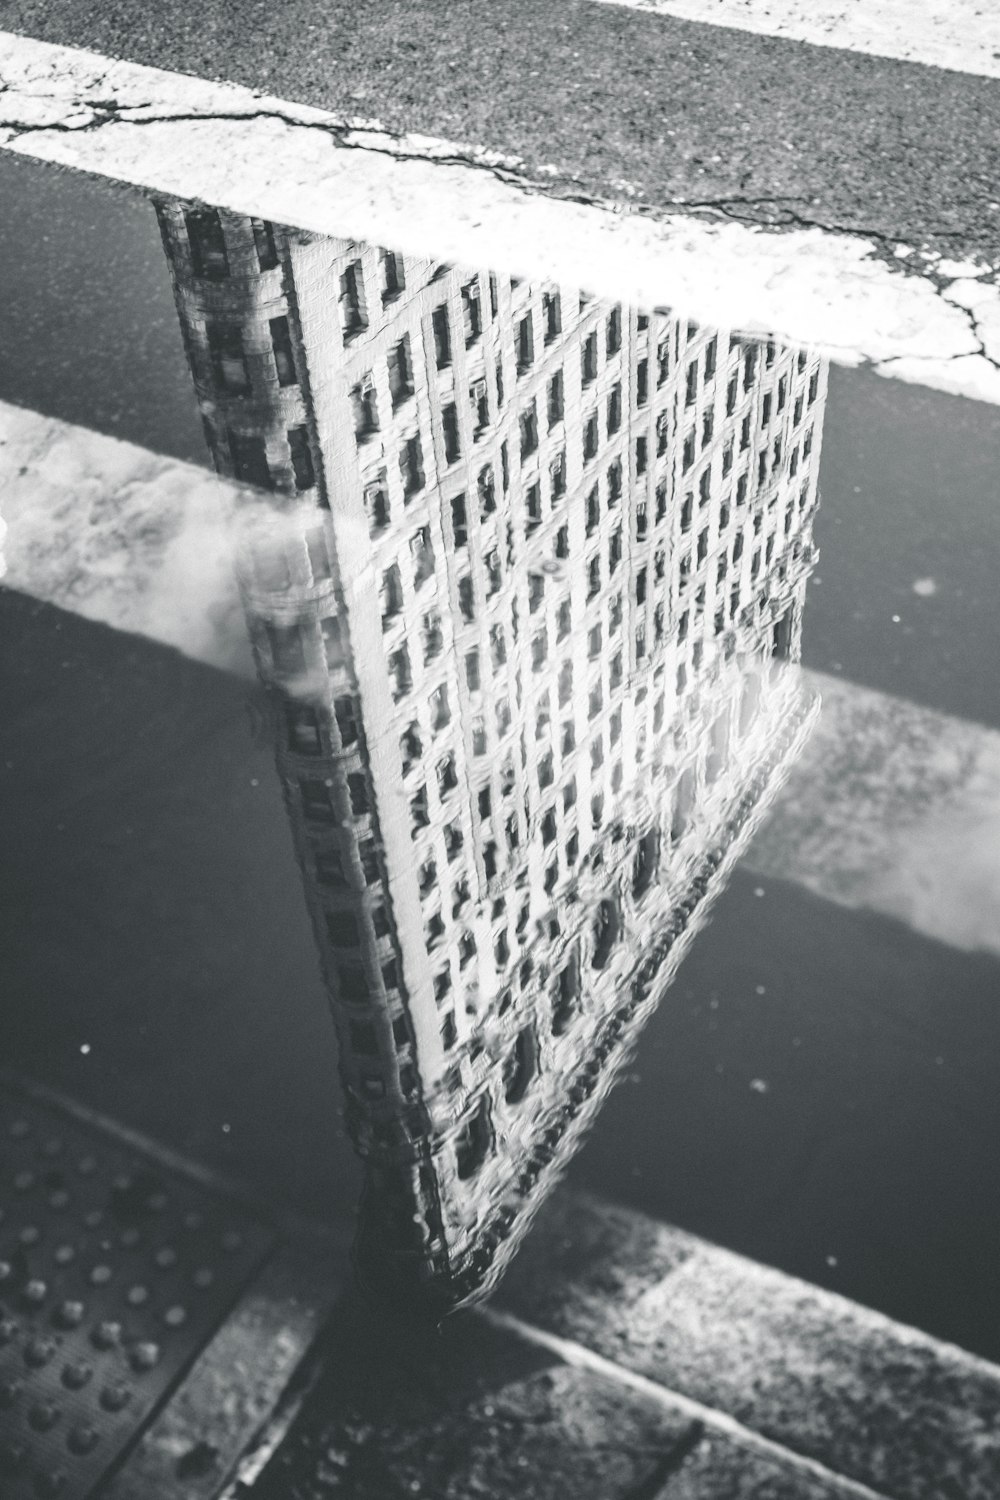 fotografia in scala di grigi del riflesso della costruzione sullo specchio d'acqua